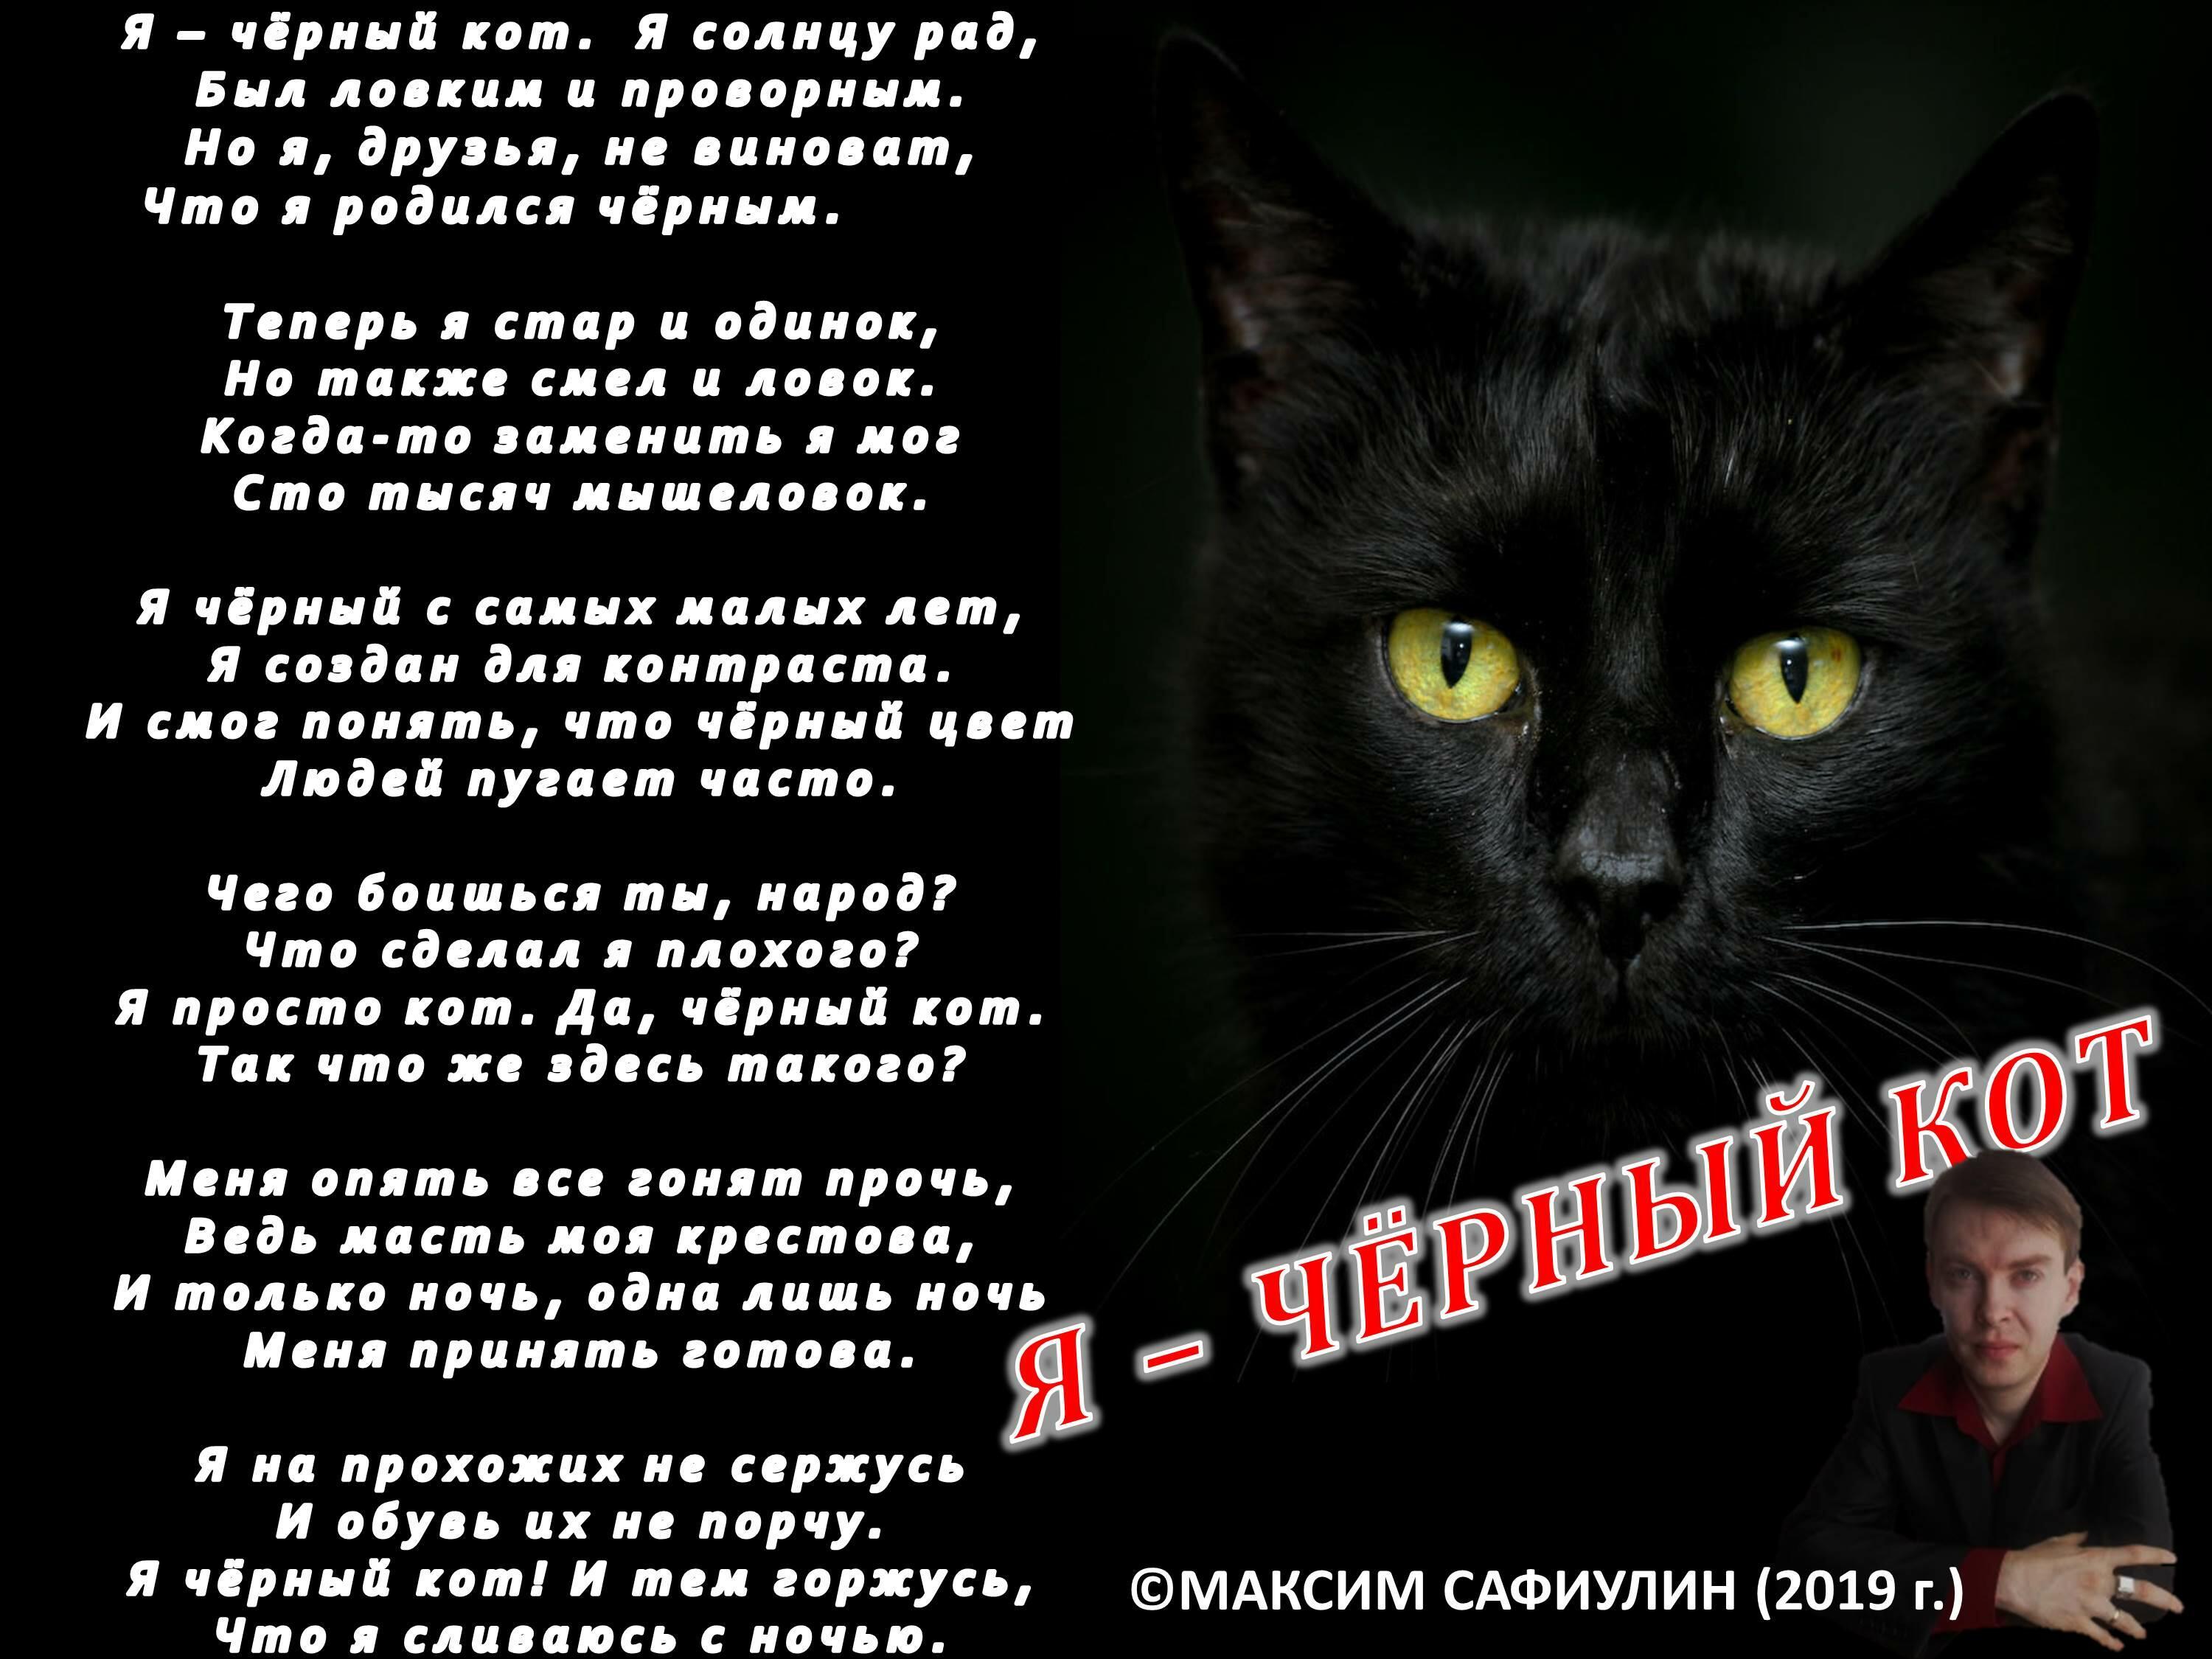 Текст песни жил да был черный. Стих про черного кота. Стихи о черном коте. Стих про черного котенка. Стих про черного кота для детей.